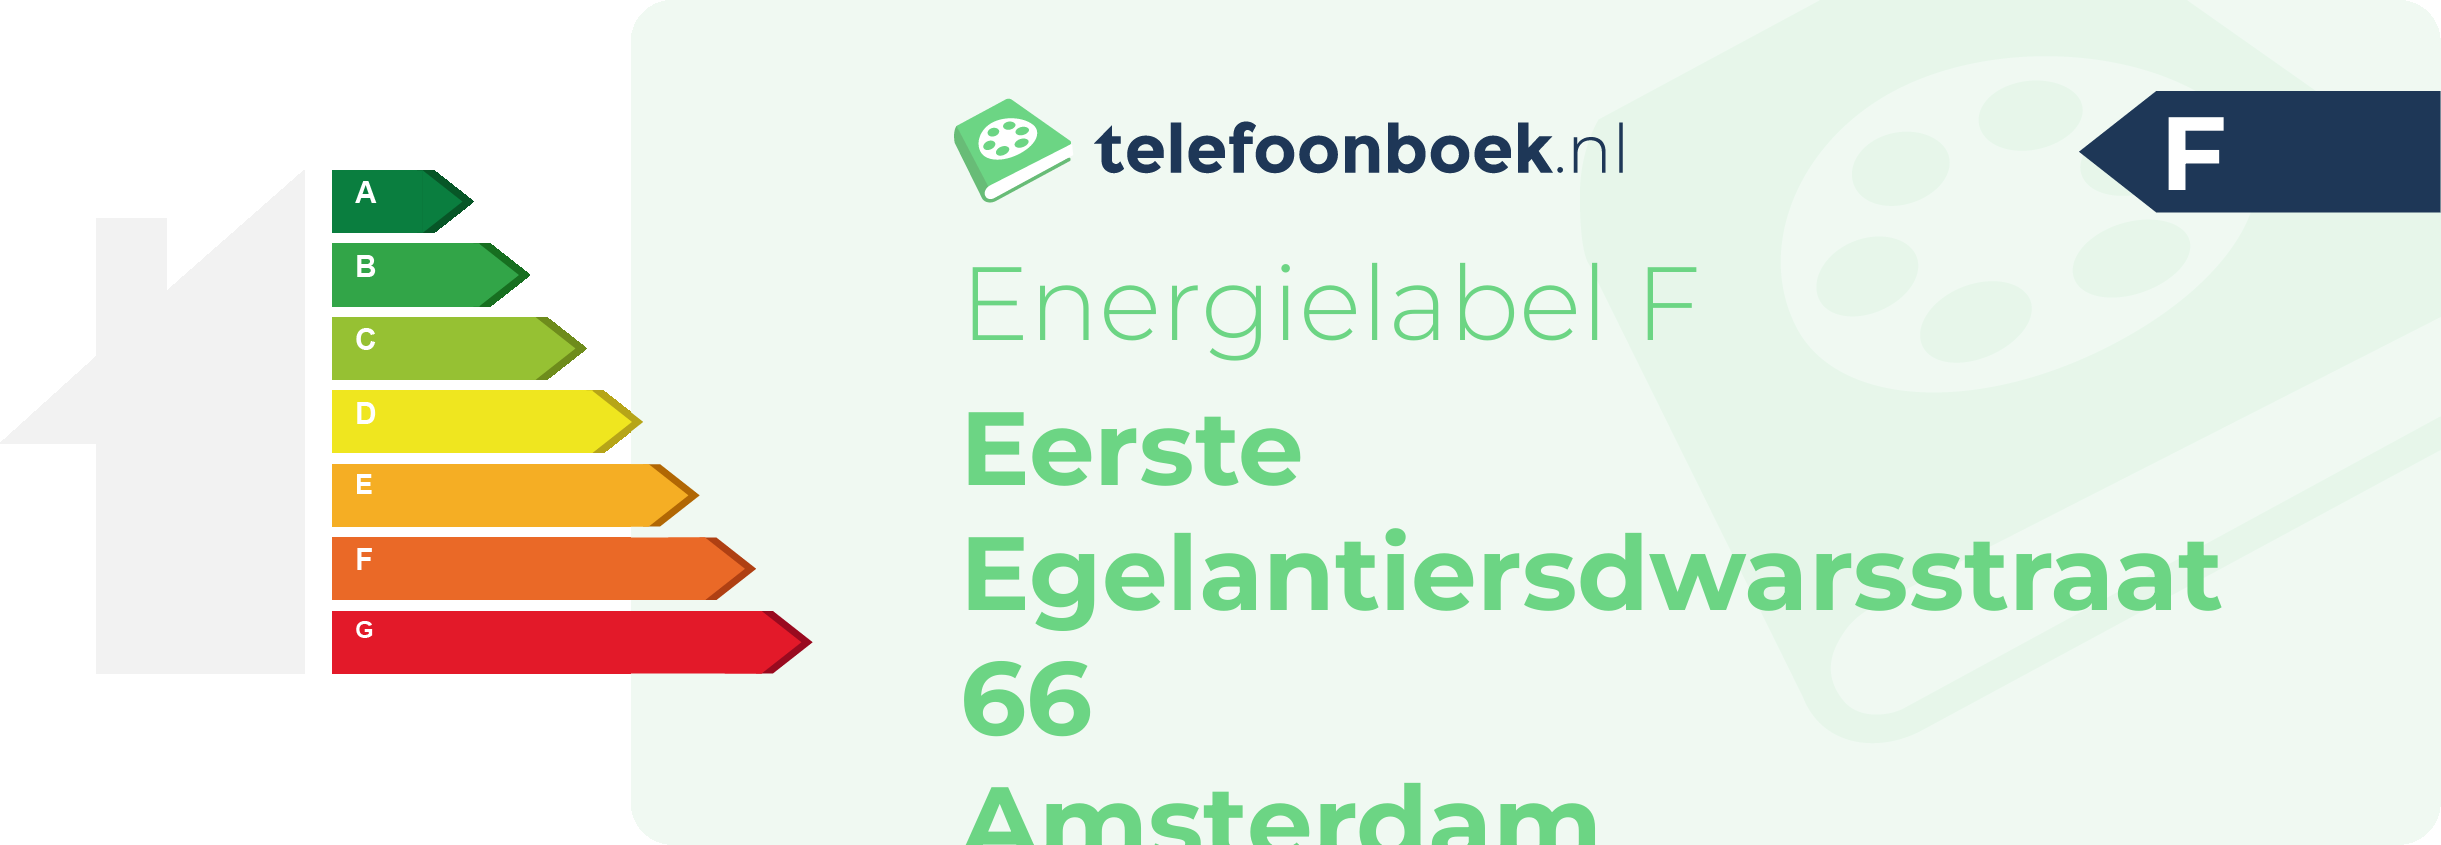 Energielabel Eerste Egelantiersdwarsstraat 66 Amsterdam